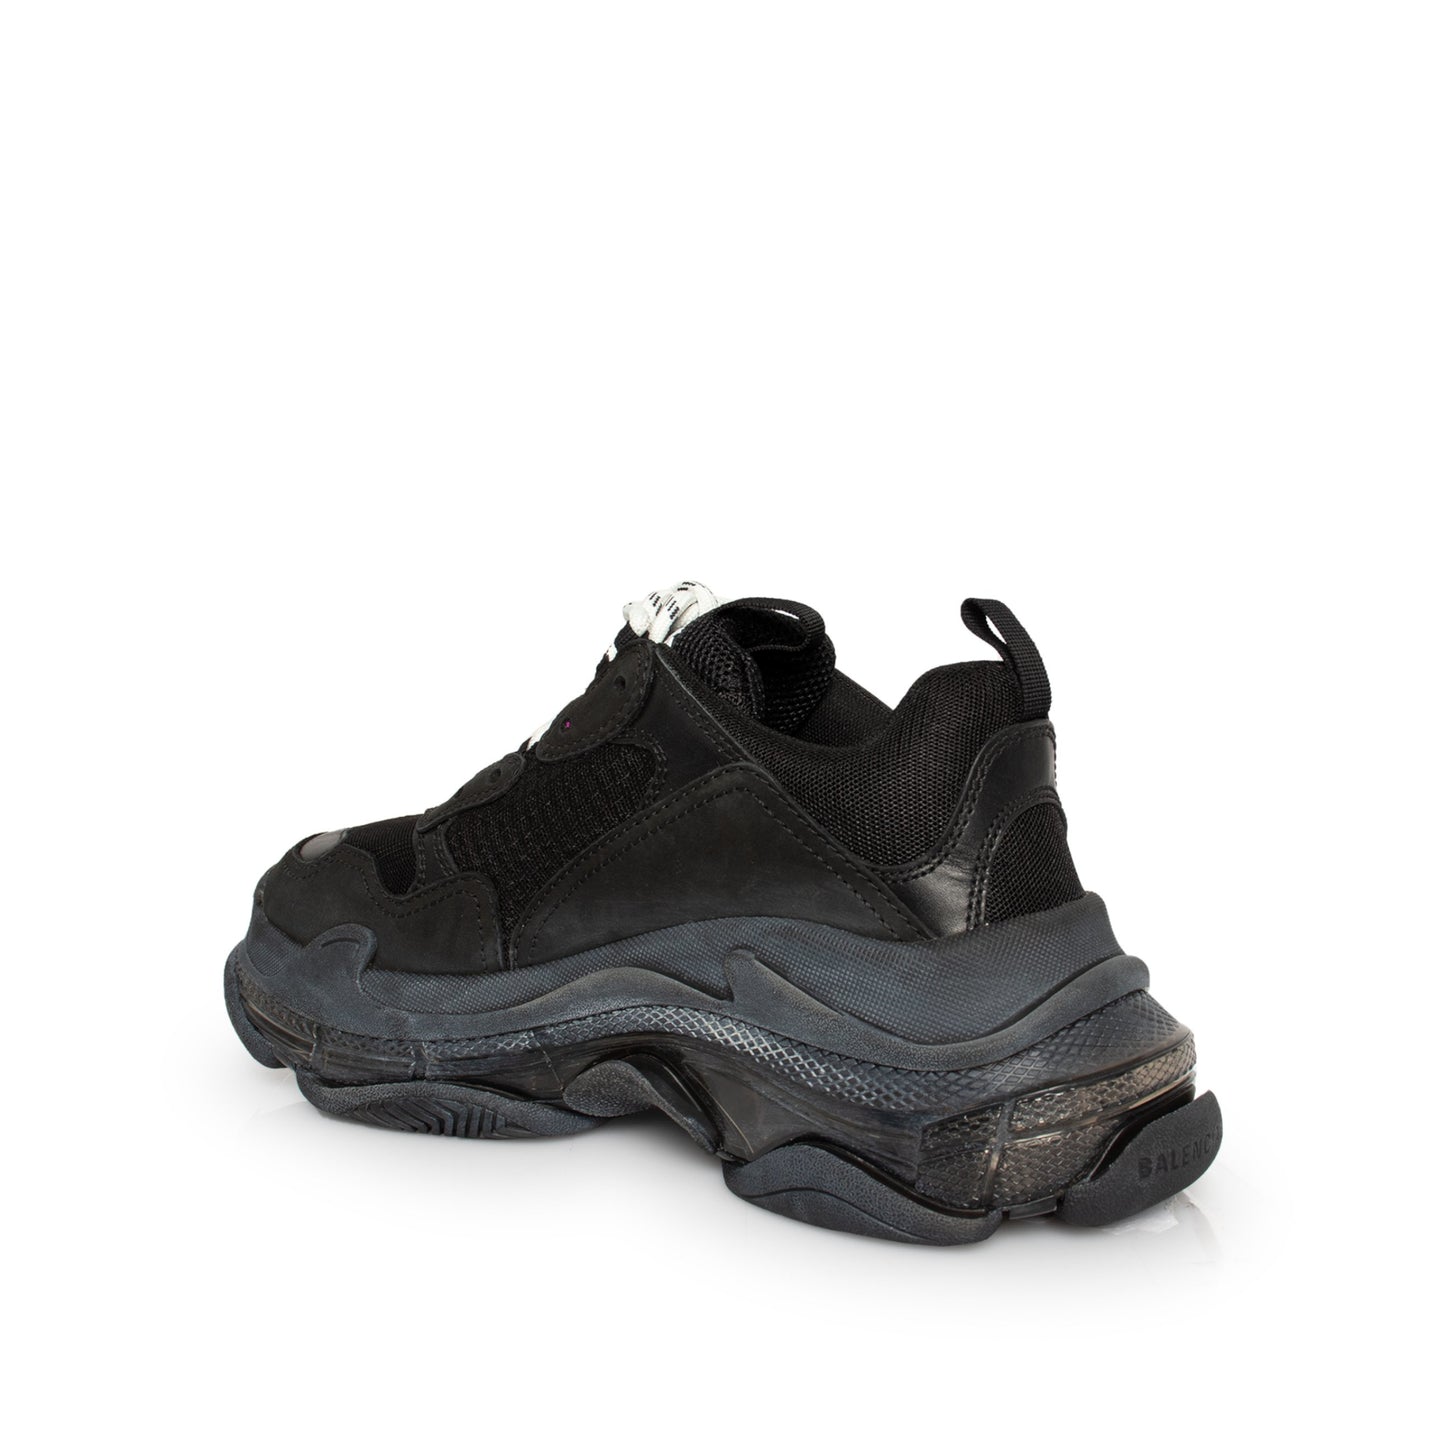 Triple S Clear Sole Sneakers in Black